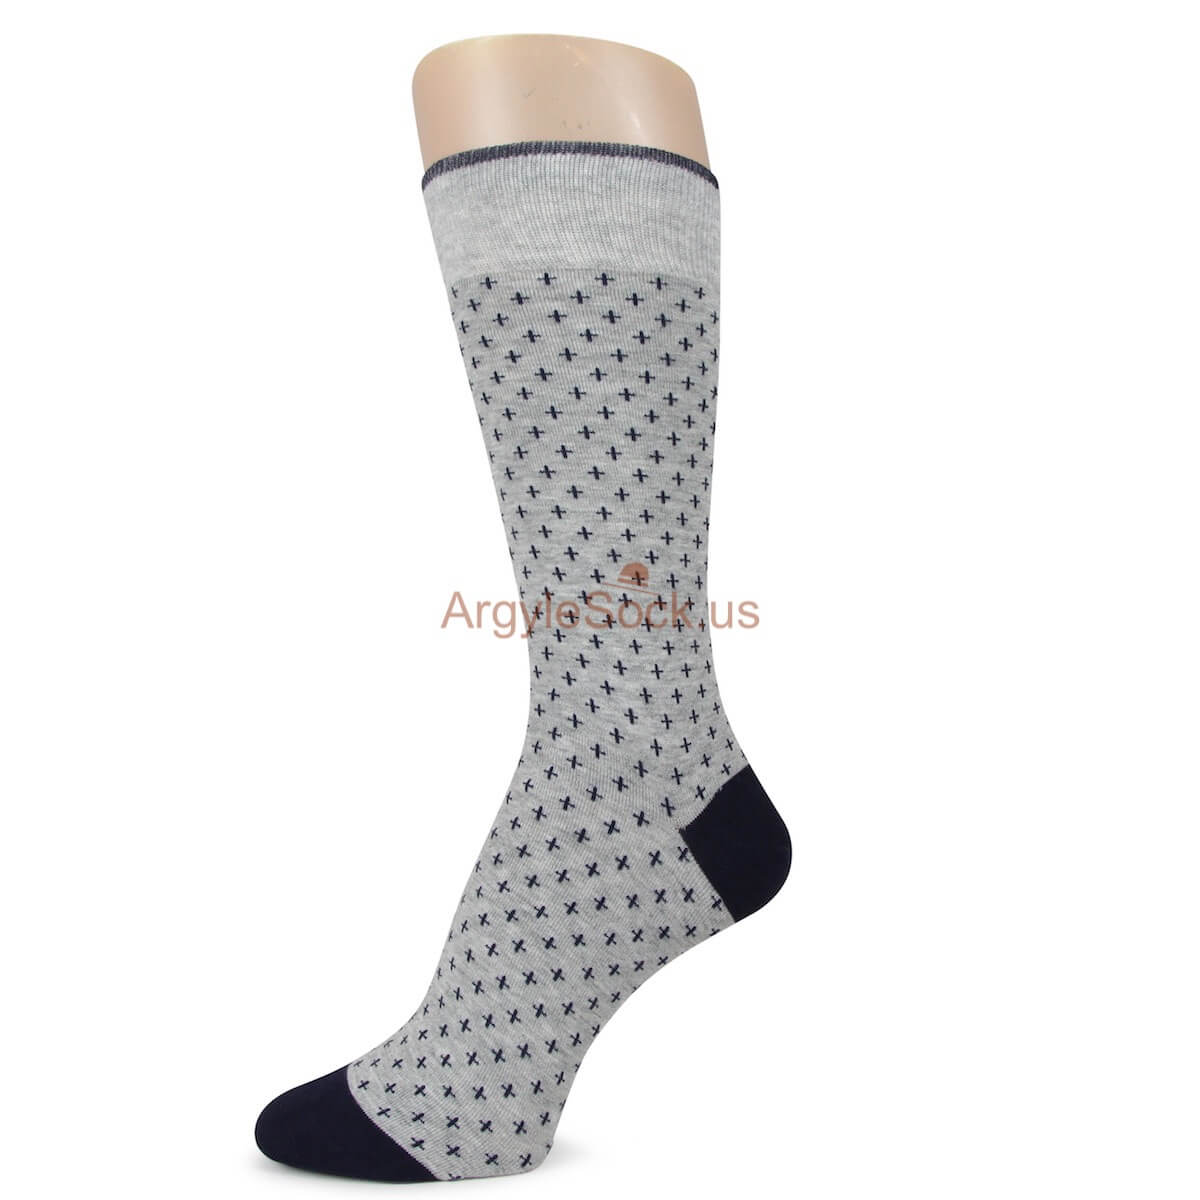 Grey with Crisscross Inspired Socks for Men